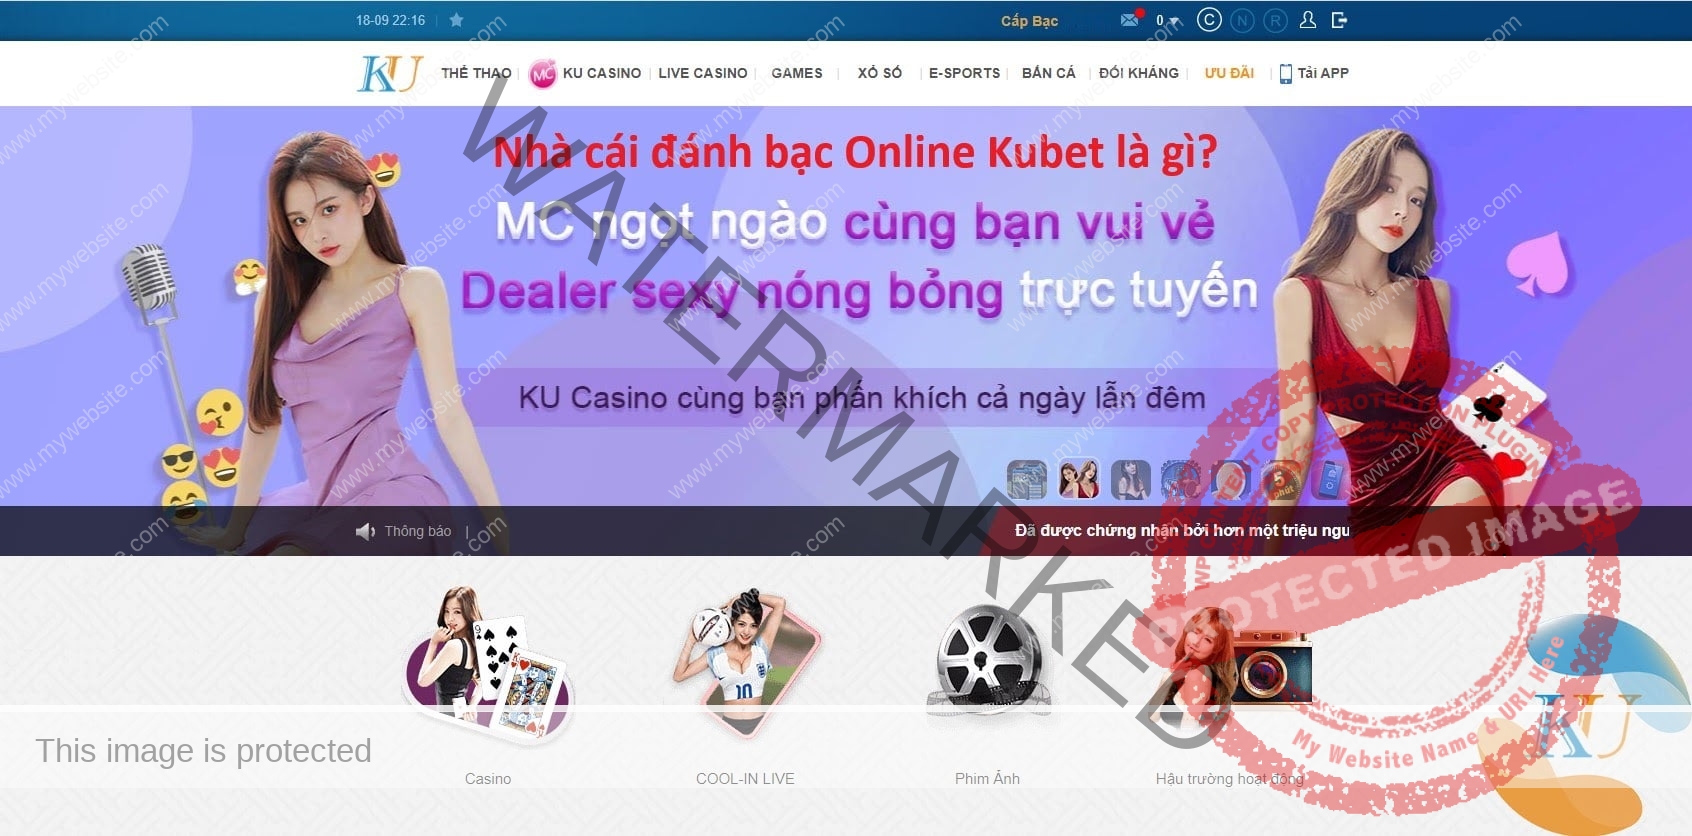 Đánh bạc online an toàn tại Kubet?